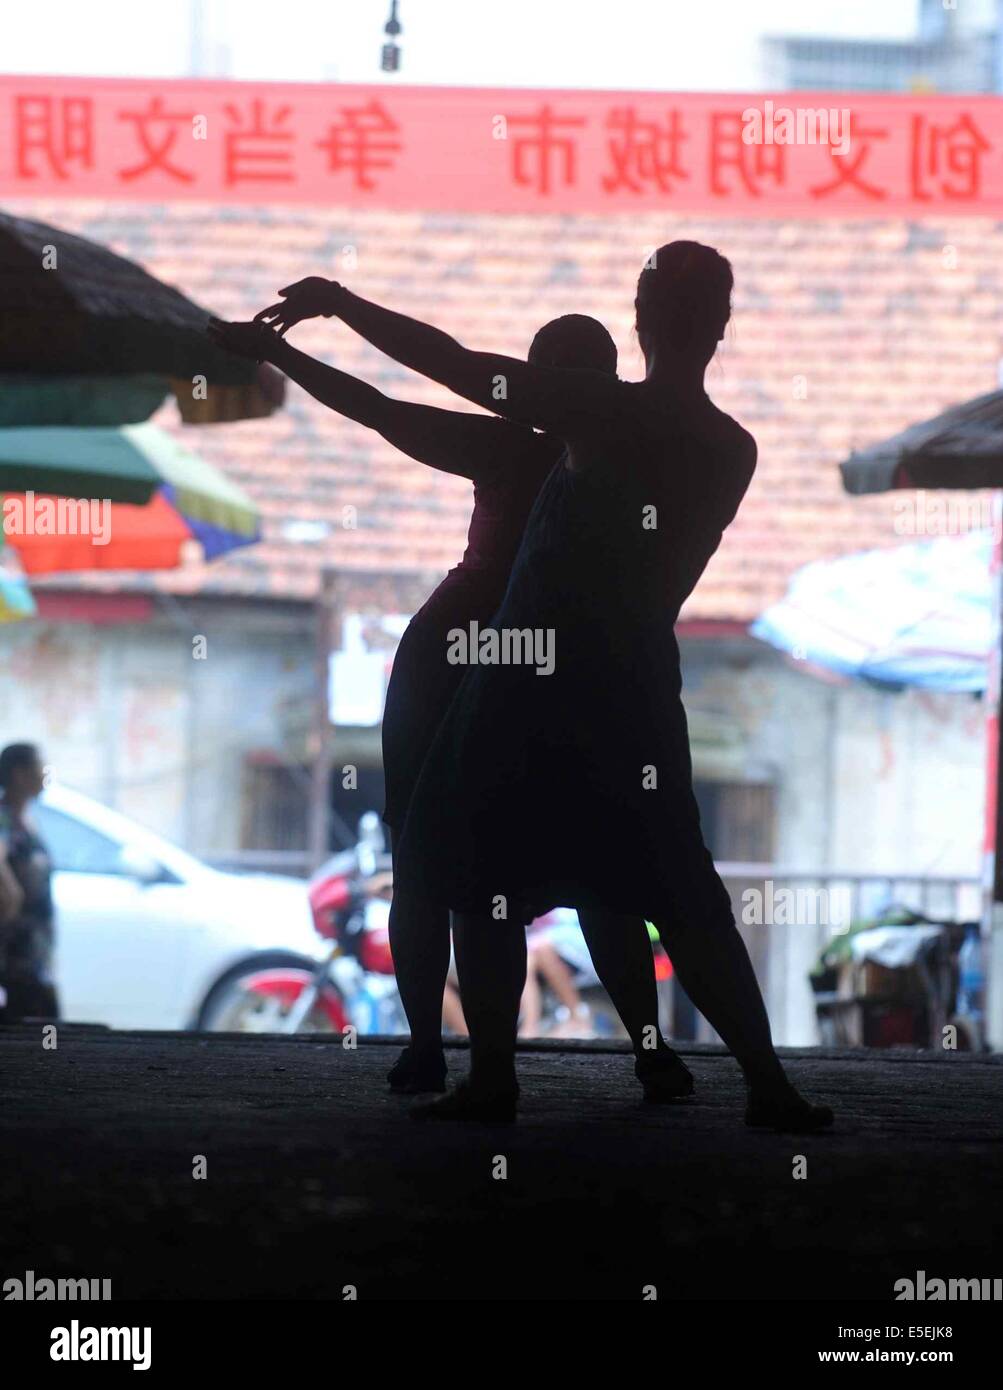 (140730) -- Paris, 30 juillet 2014 (Xinhua) -- concessionnaires femelle danse dans le passage d'Xiaoershan Marché aux Légumes à Liuzhou, Chine du Sud, région autonome Zhuang du Guangxi, le 27 juillet 2014. Les concessionnaires des femmes ici ont profité d'inactivité pour faire de l'exercice physique par la danse. (Xinhua/Huang Xiaobang) (lfj) Banque D'Images